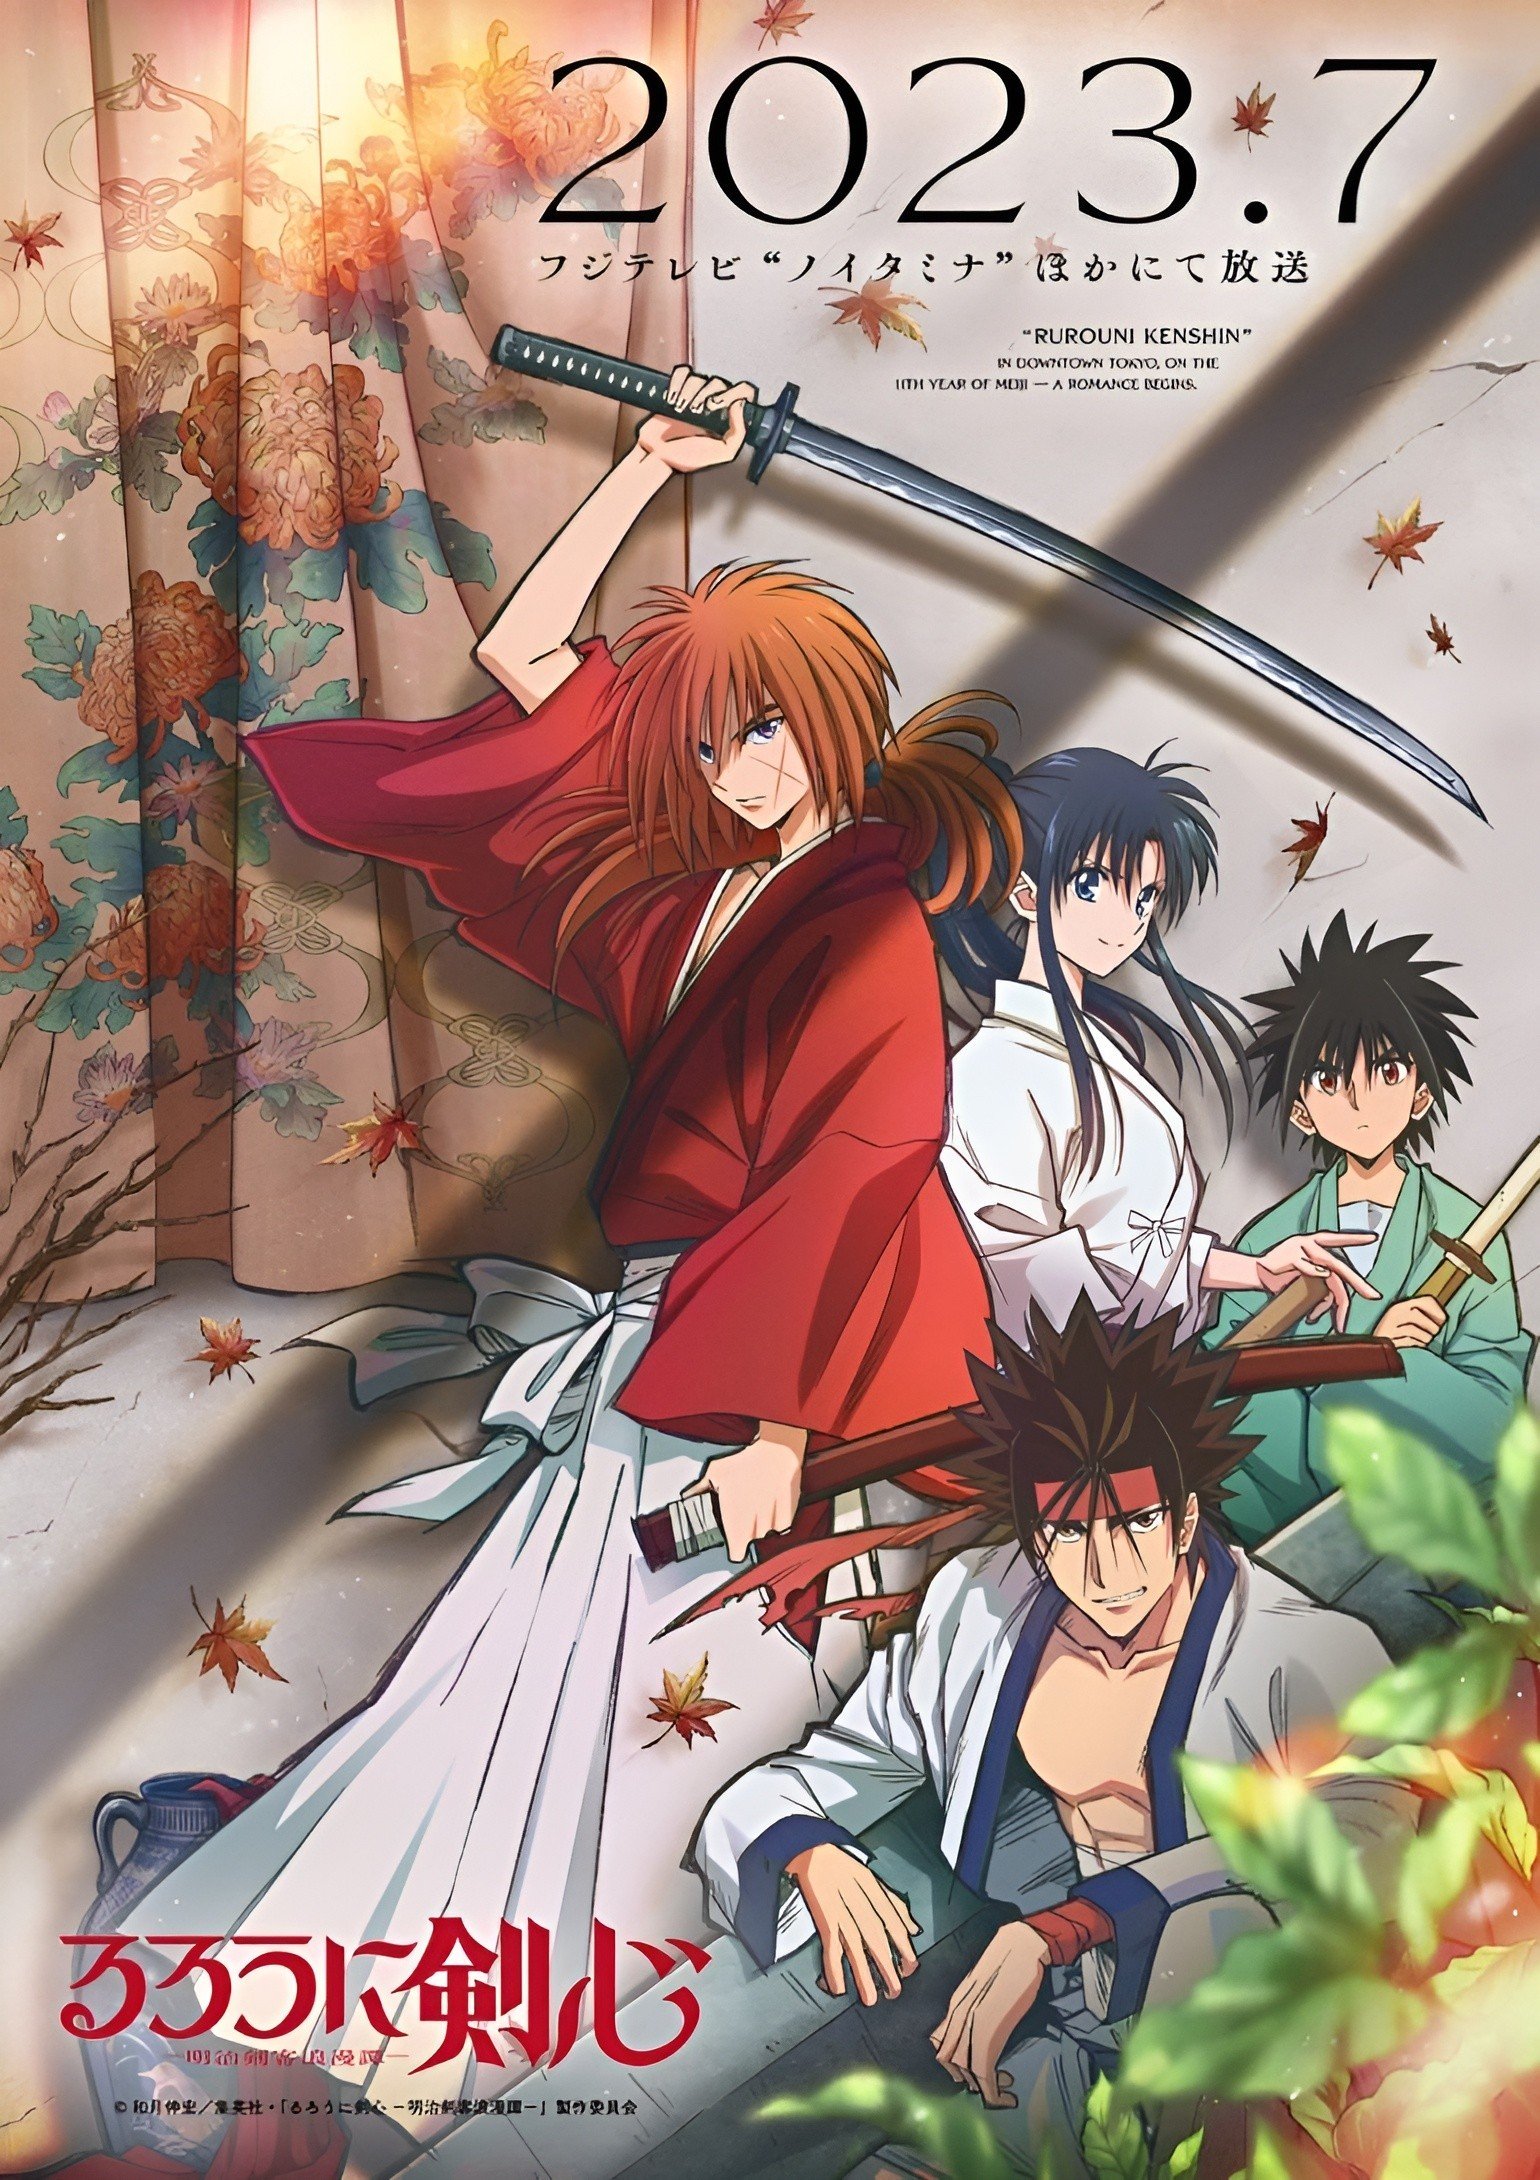 Image Rurouni Kenshin: Meiji Kenkaku Romantan (2023)